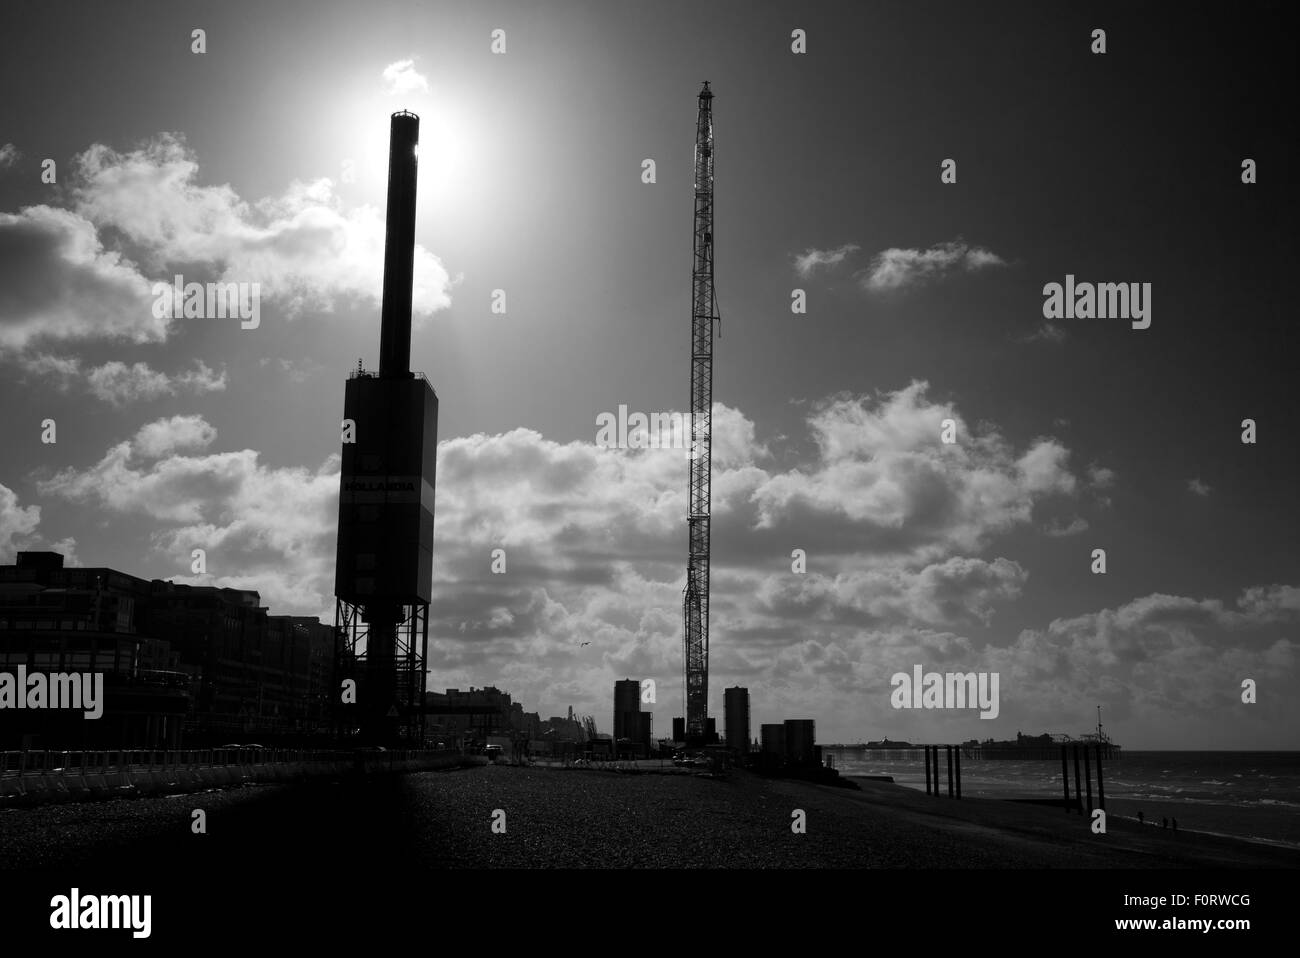 Soleil du matin derrière la tour d'observation i360 en cours de construction, Brighton, UK Banque D'Images